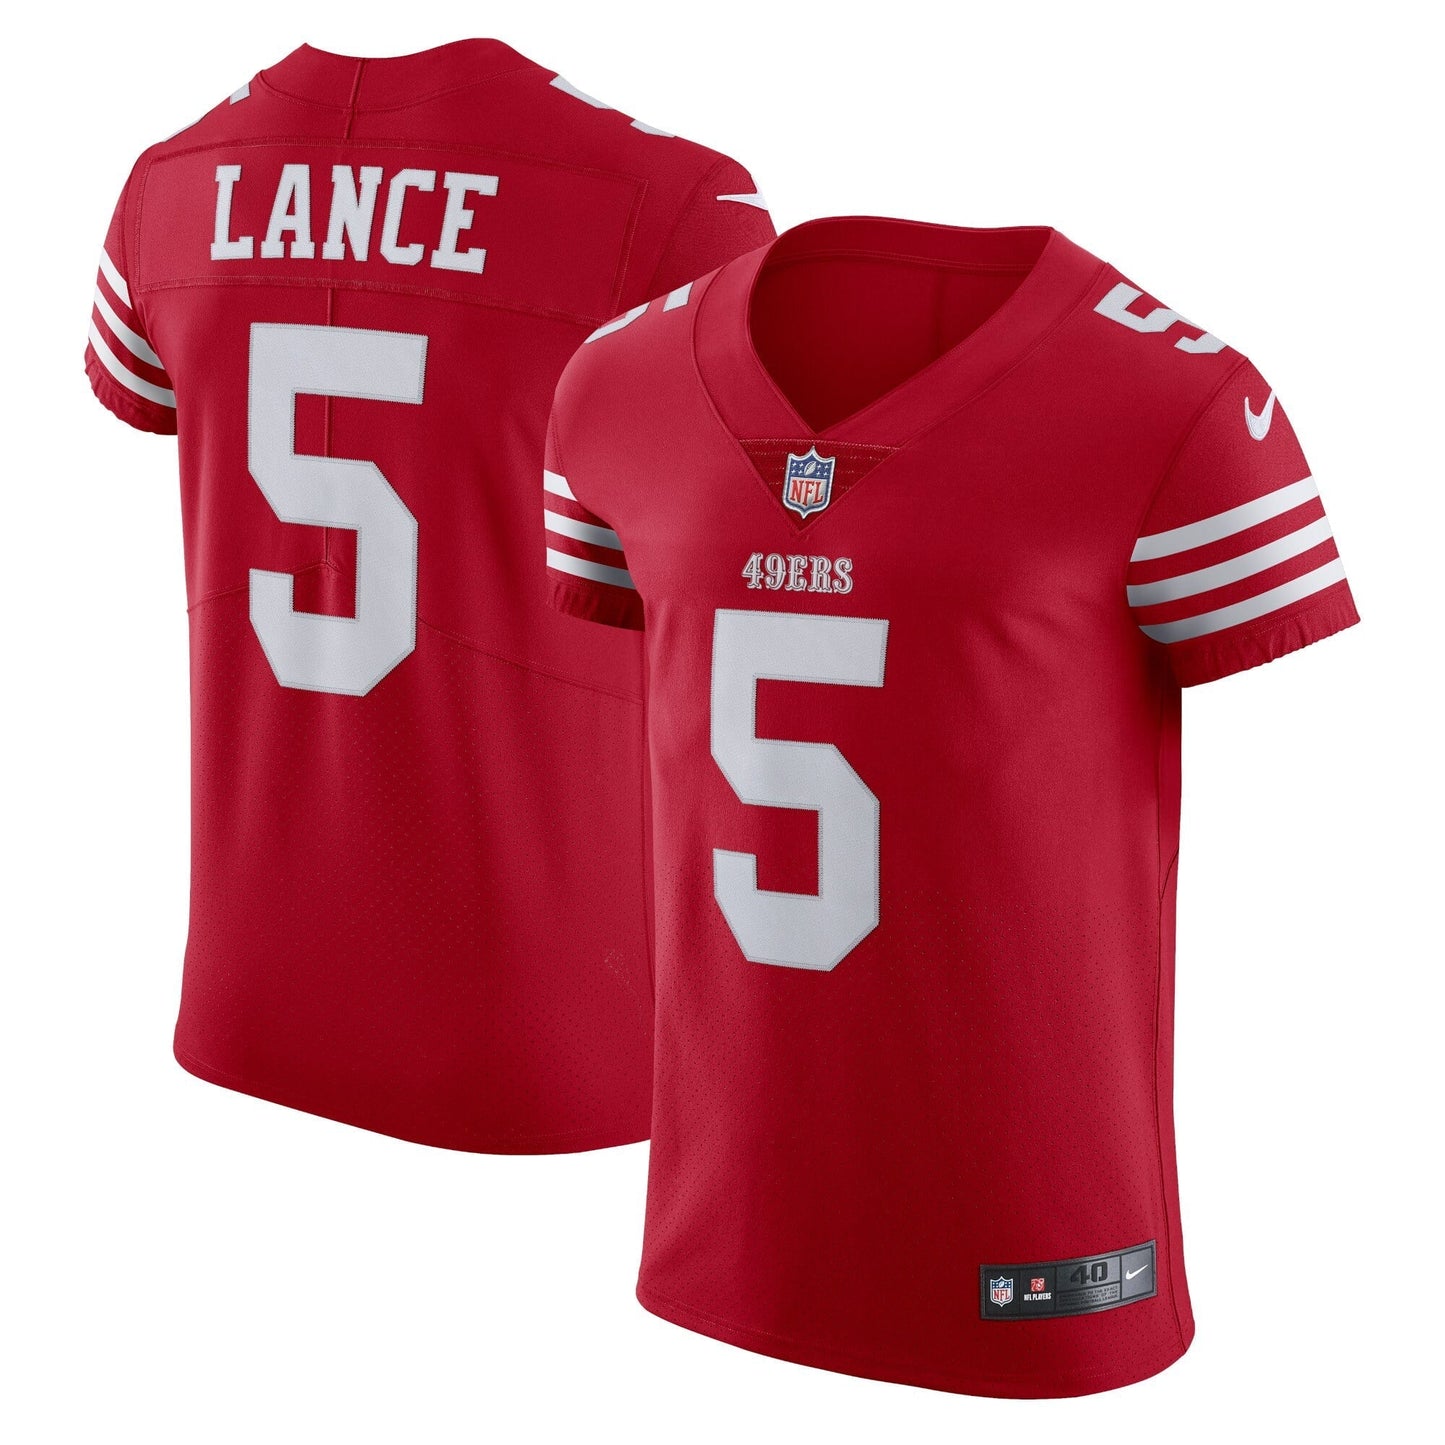 Men's Nike Trey Lance Scarlet San Francisco 49ers Vapor Elite Jersey